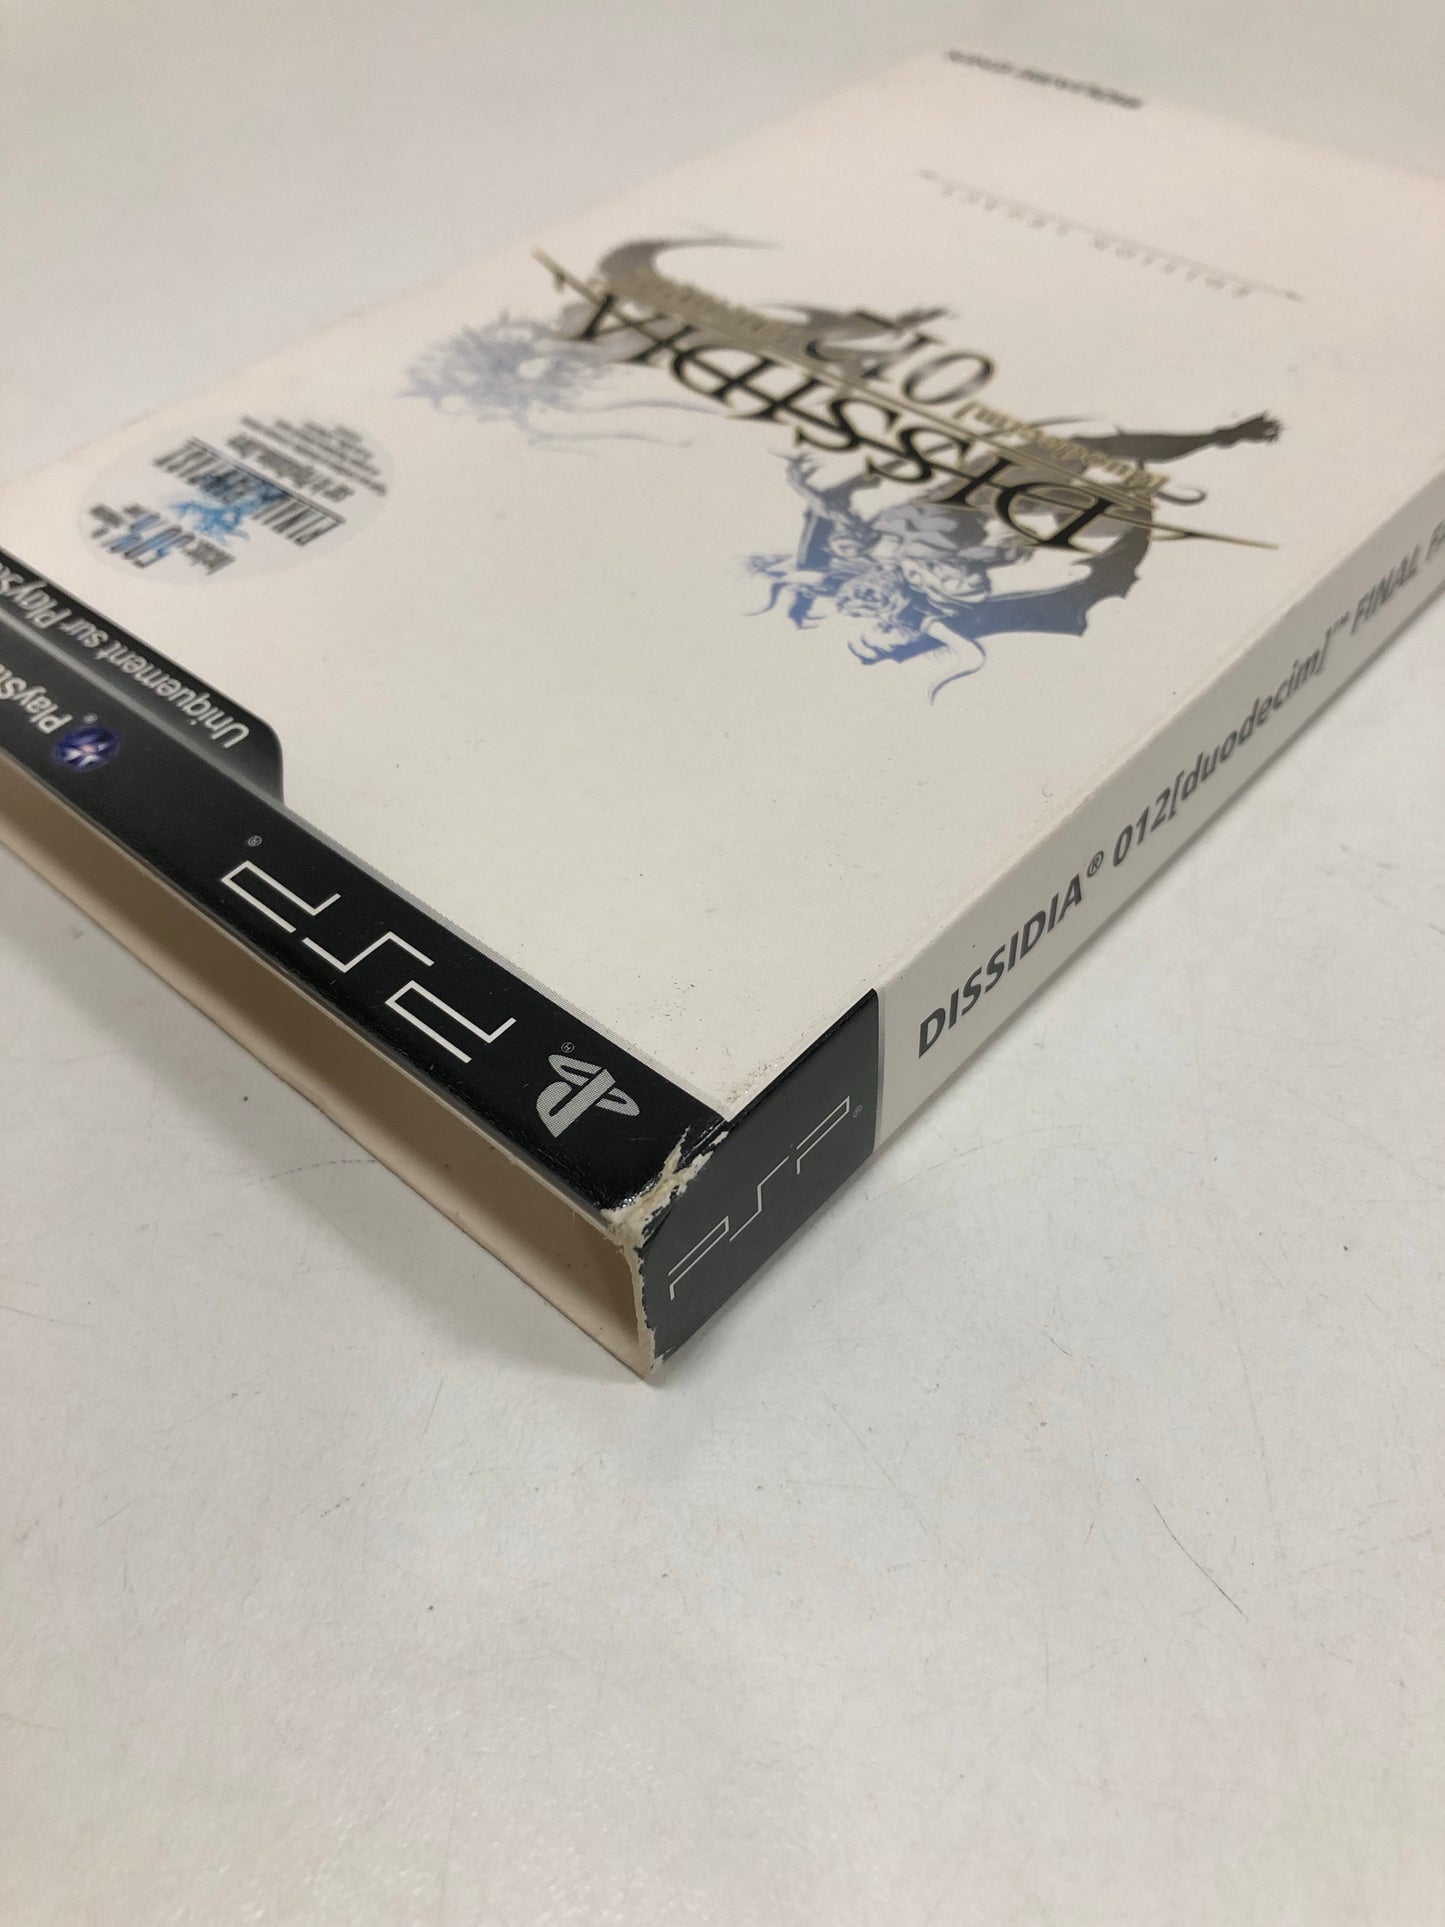 dissidia 012 final fantasy edition legacy Sony psp avec notice